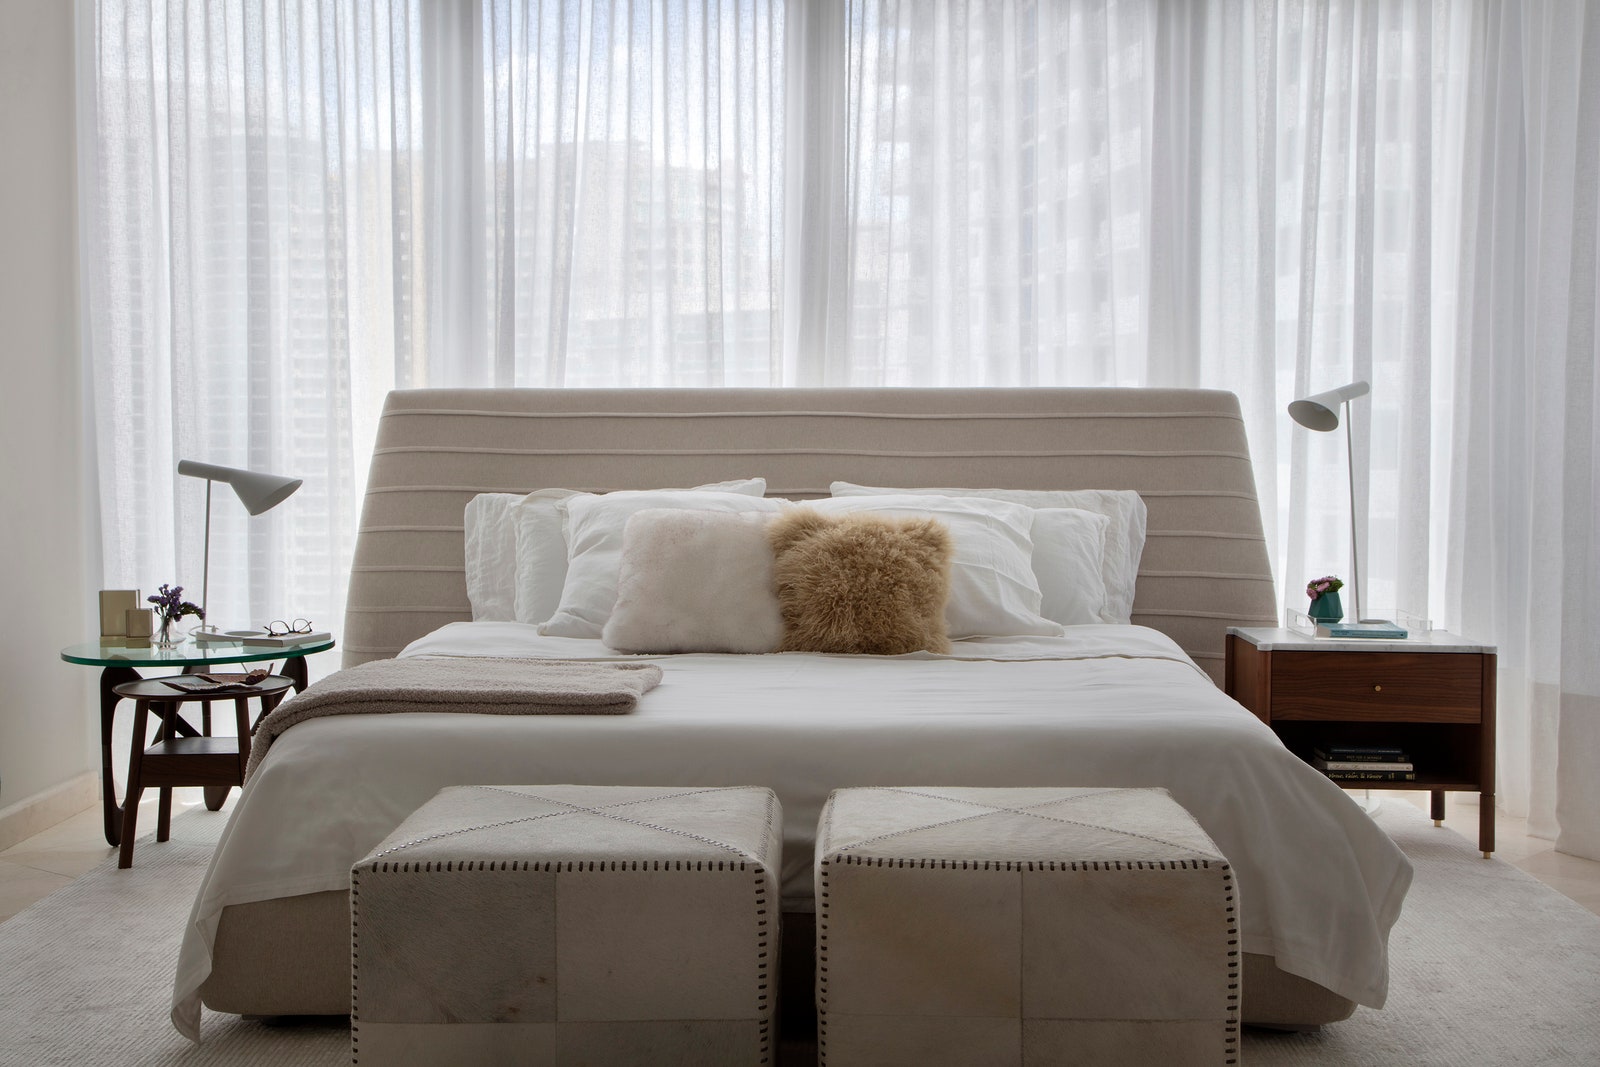 Разные прикроватные тумбочки разбавляют строгость комнаты и придают каждой половине кровати индивидуальности.